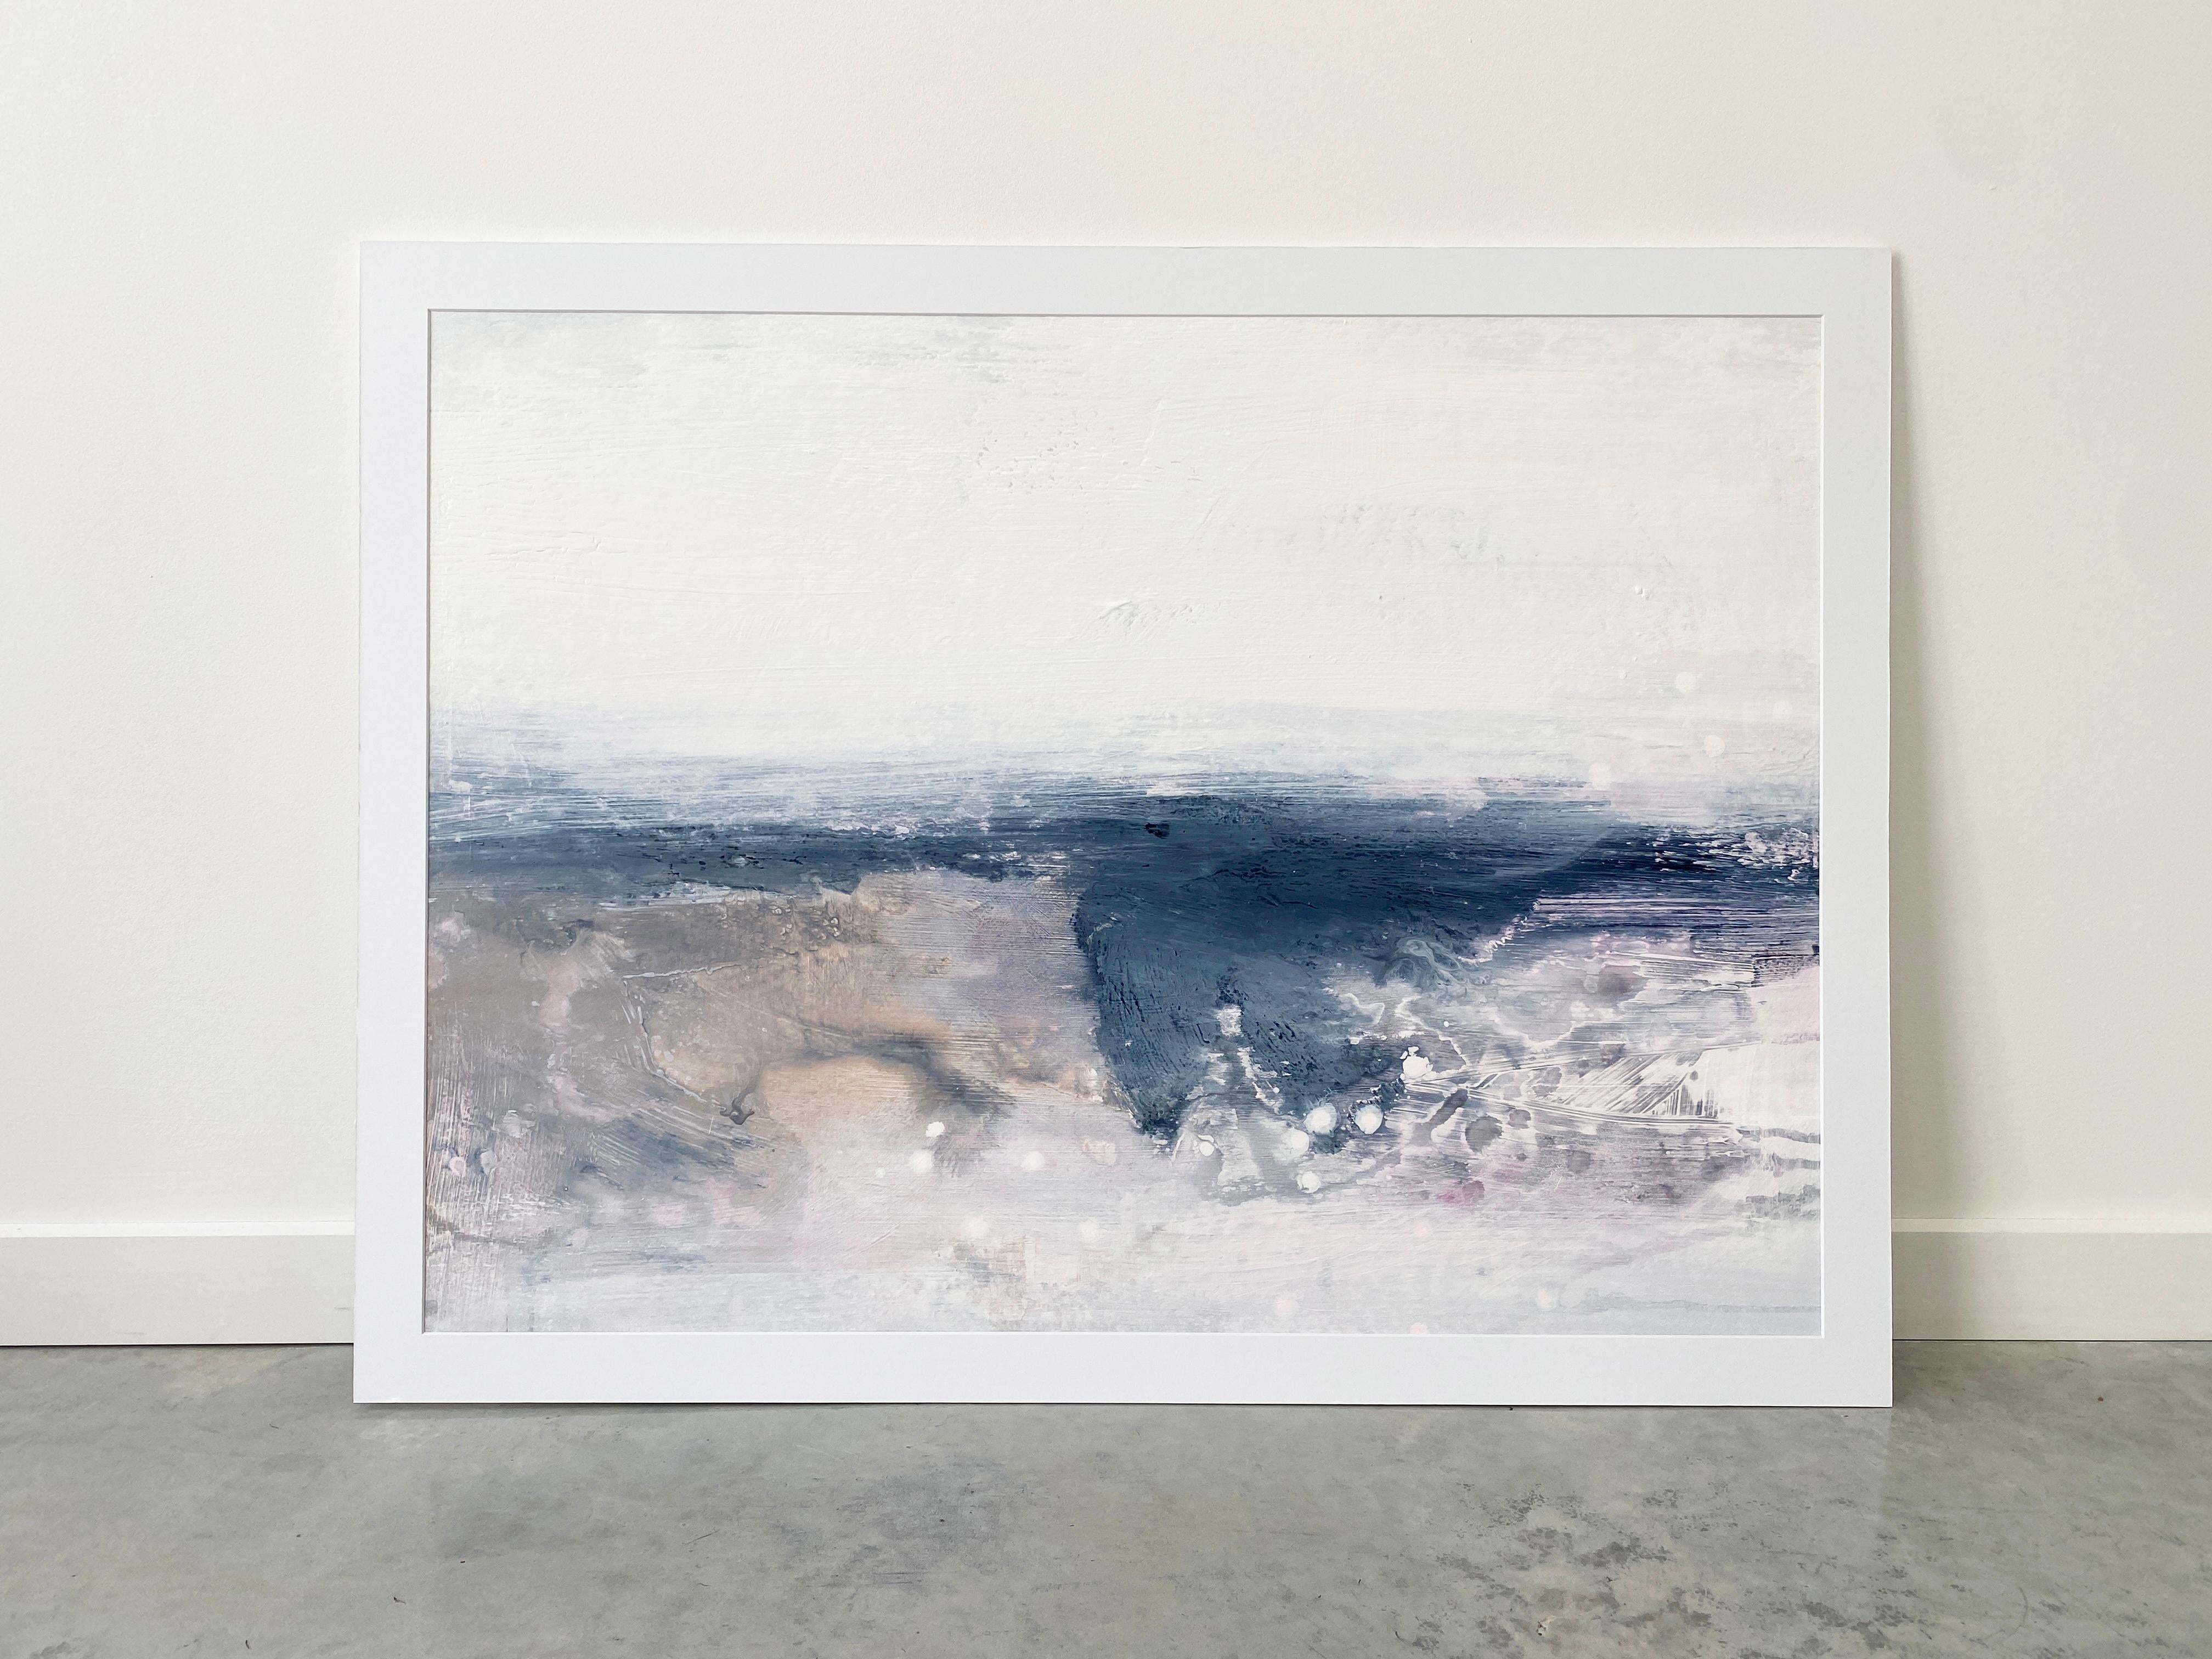 Inspirée par les vastes côtes australiennes, la collection White Calm s'inspire de la philosophie nordique et scandinave axée sur le minimalisme. Il s'agit de la simplicité et du sentiment de bien-être et de satisfaction qu'elle apporte. Insufflez